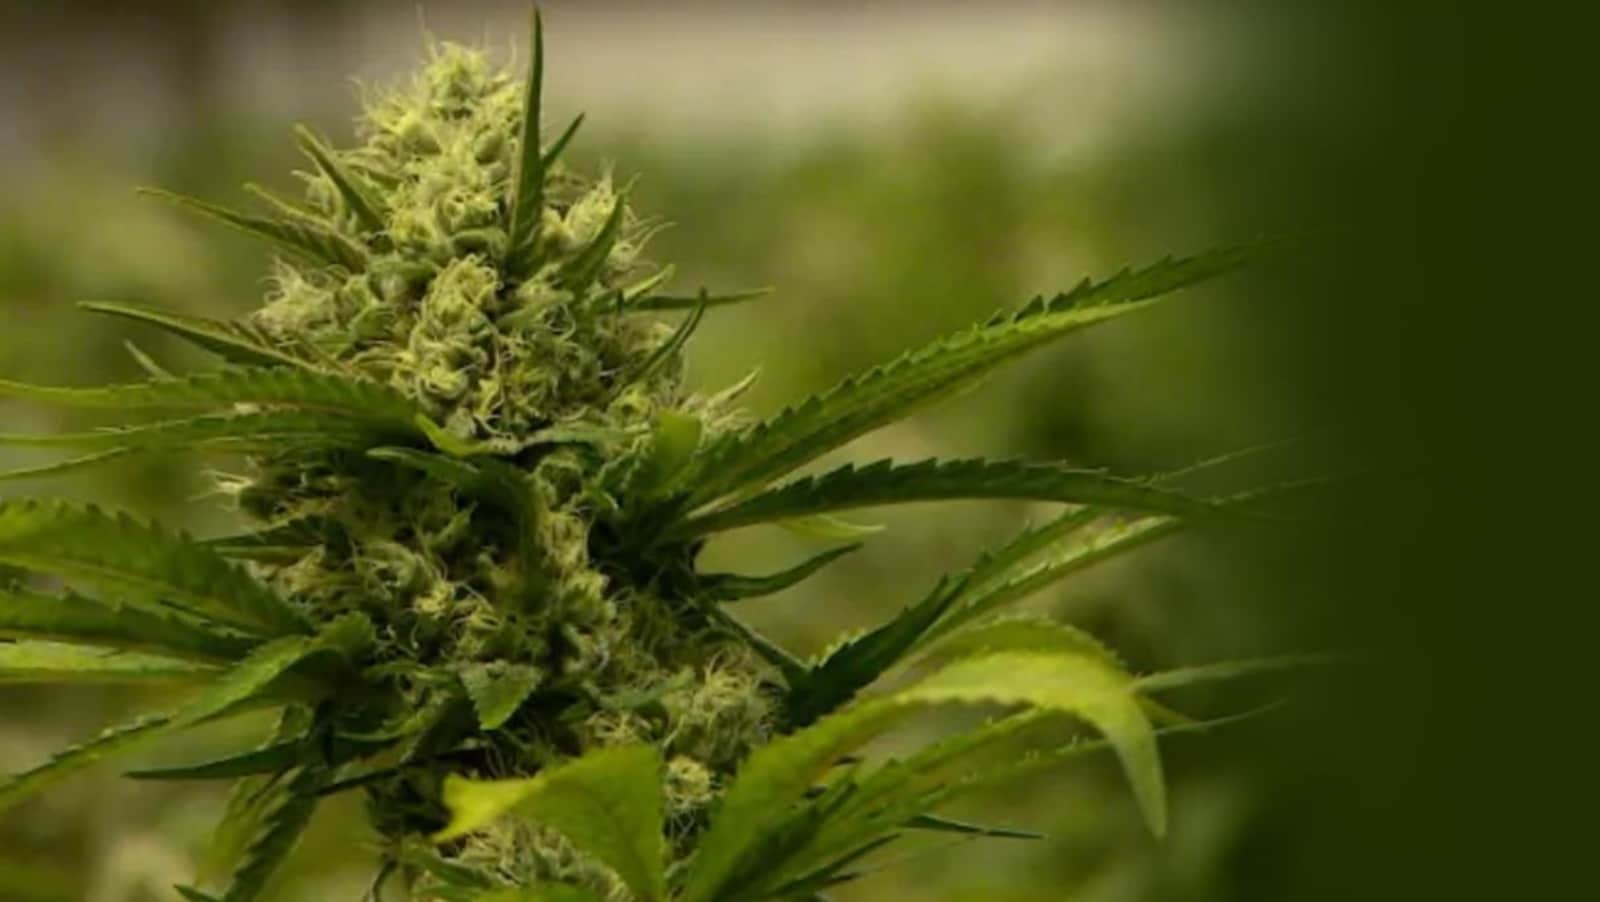 Le cannabis
Comprendre la légalisation et ses effets